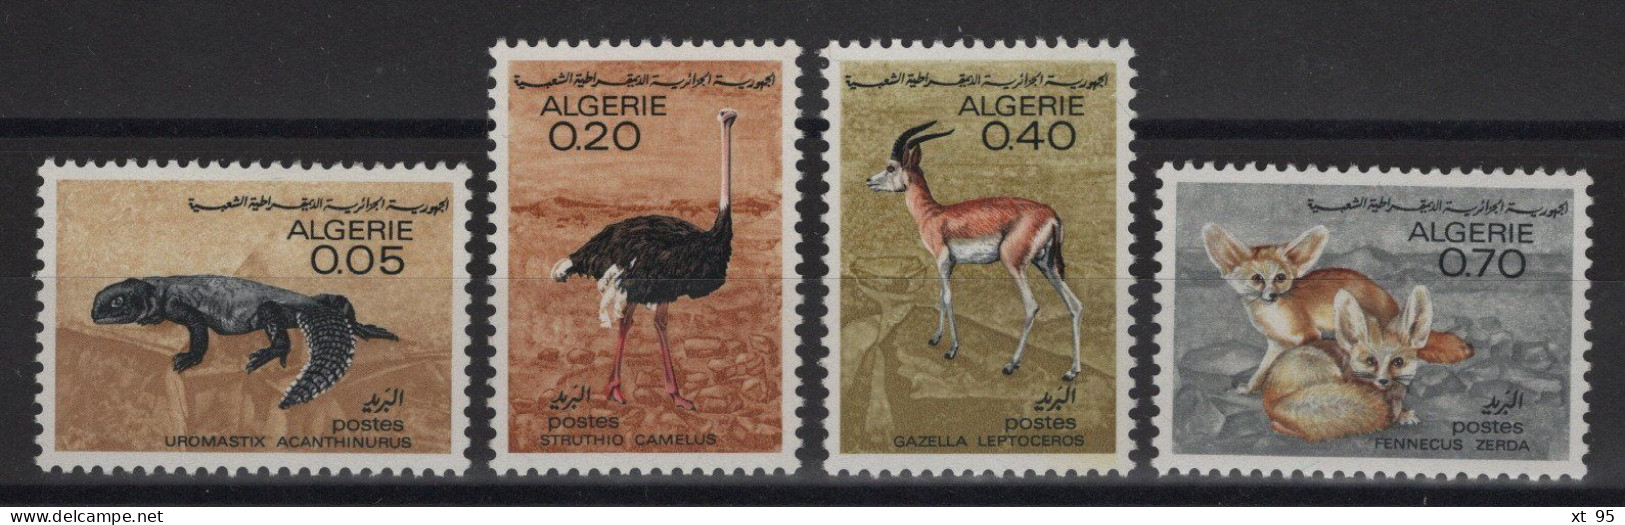 Algerie - N°447 à 450 - Faune Saharienne - Cote 5.50€ - ** Neufs Sans Charniere - Algeria (1962-...)